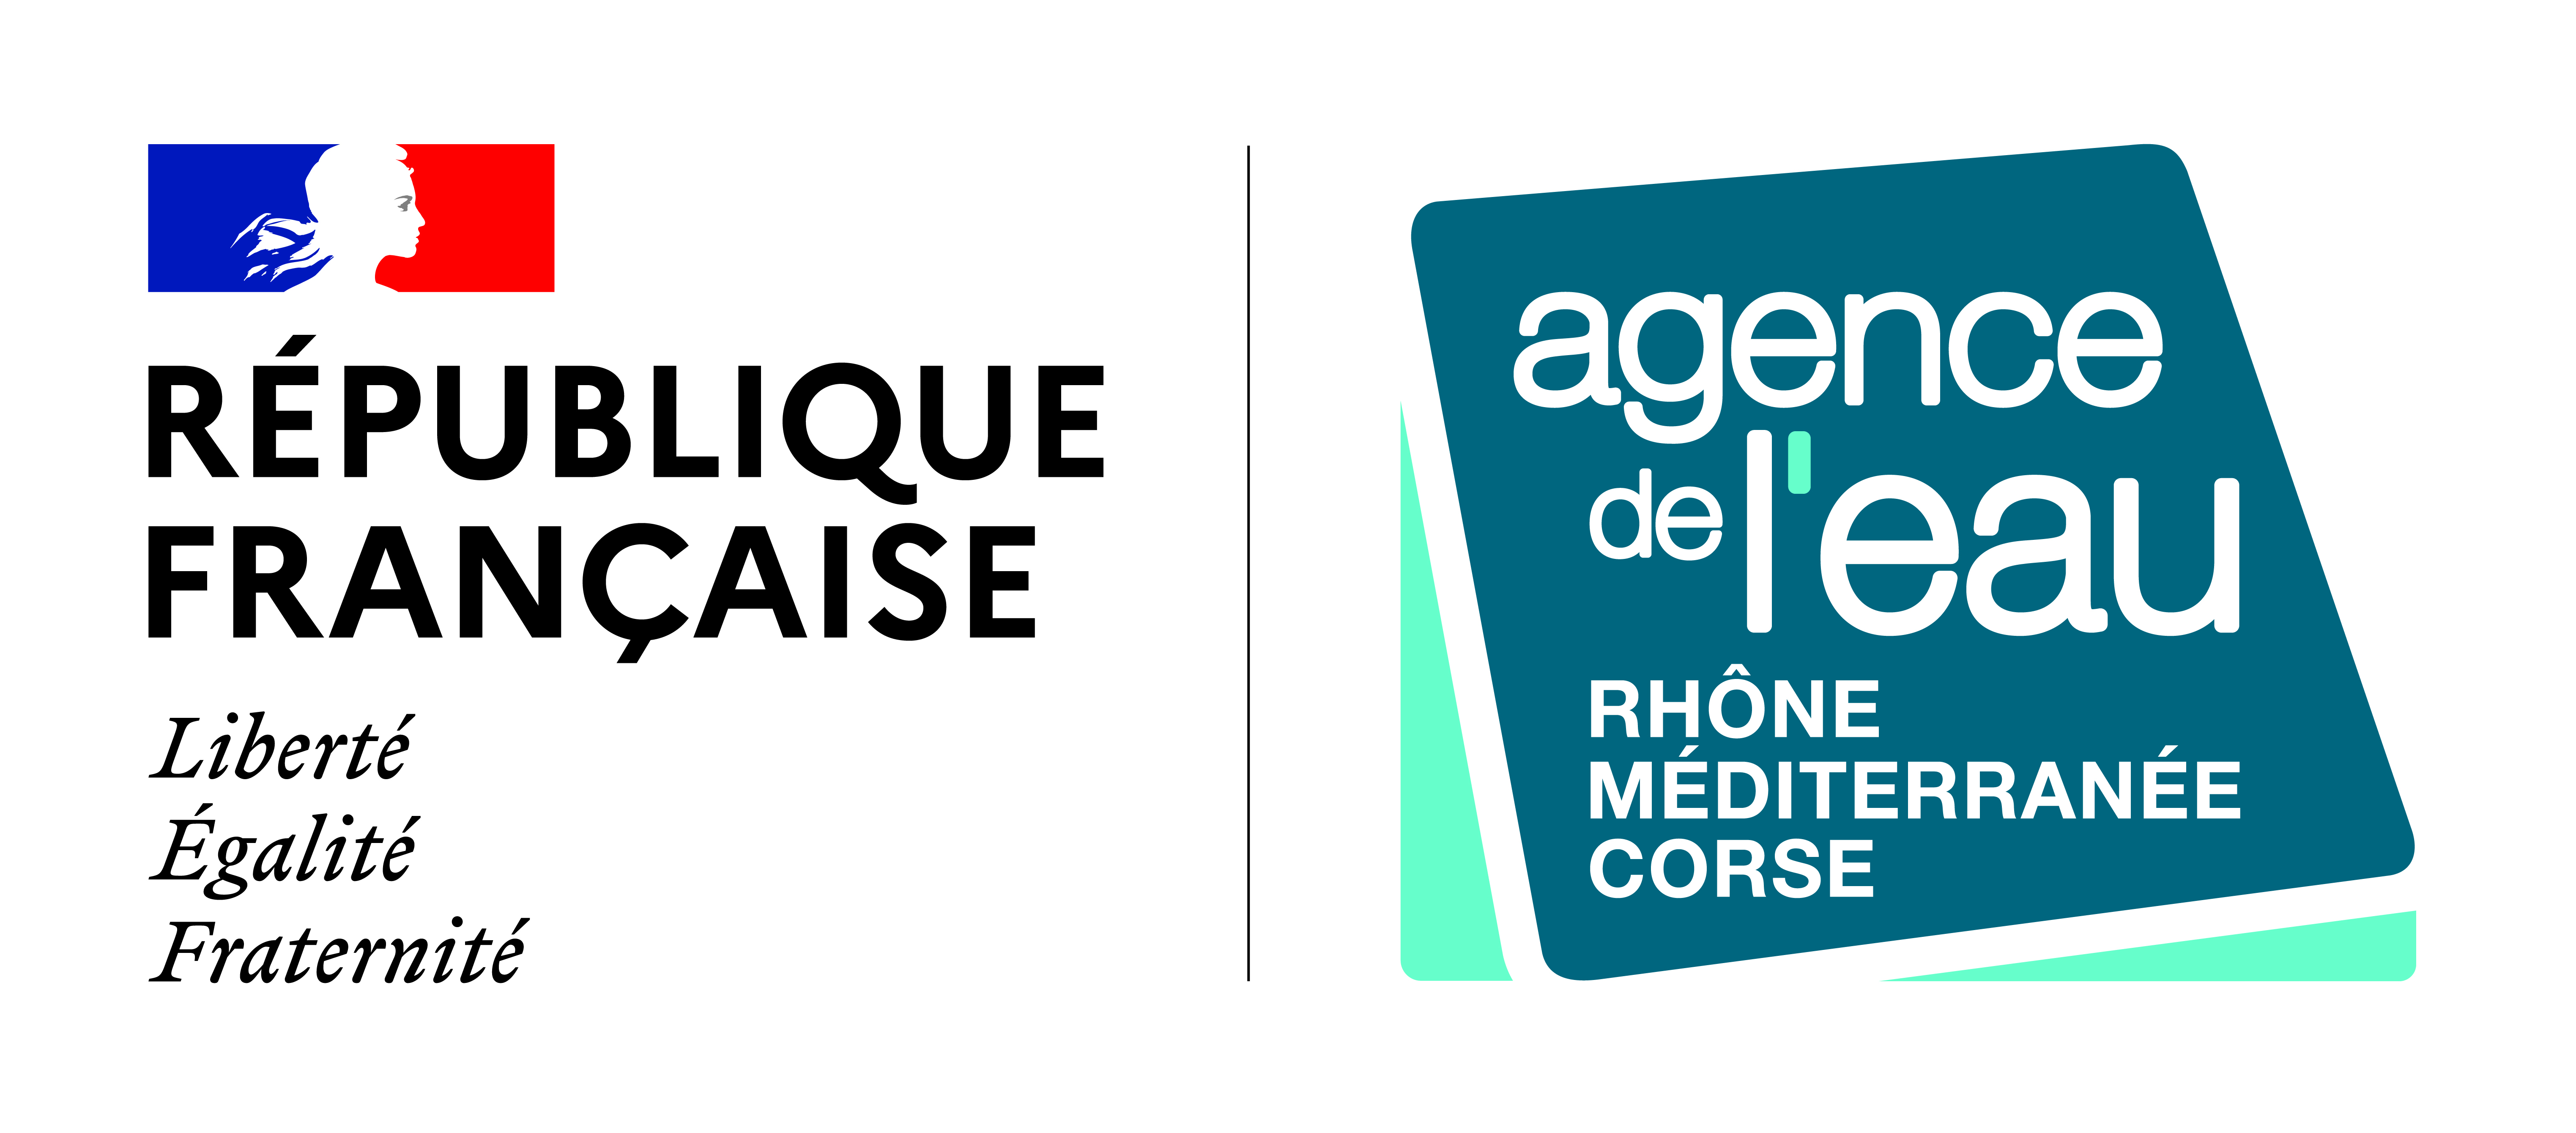 Logo République française - Agence de l'eau : Couleur